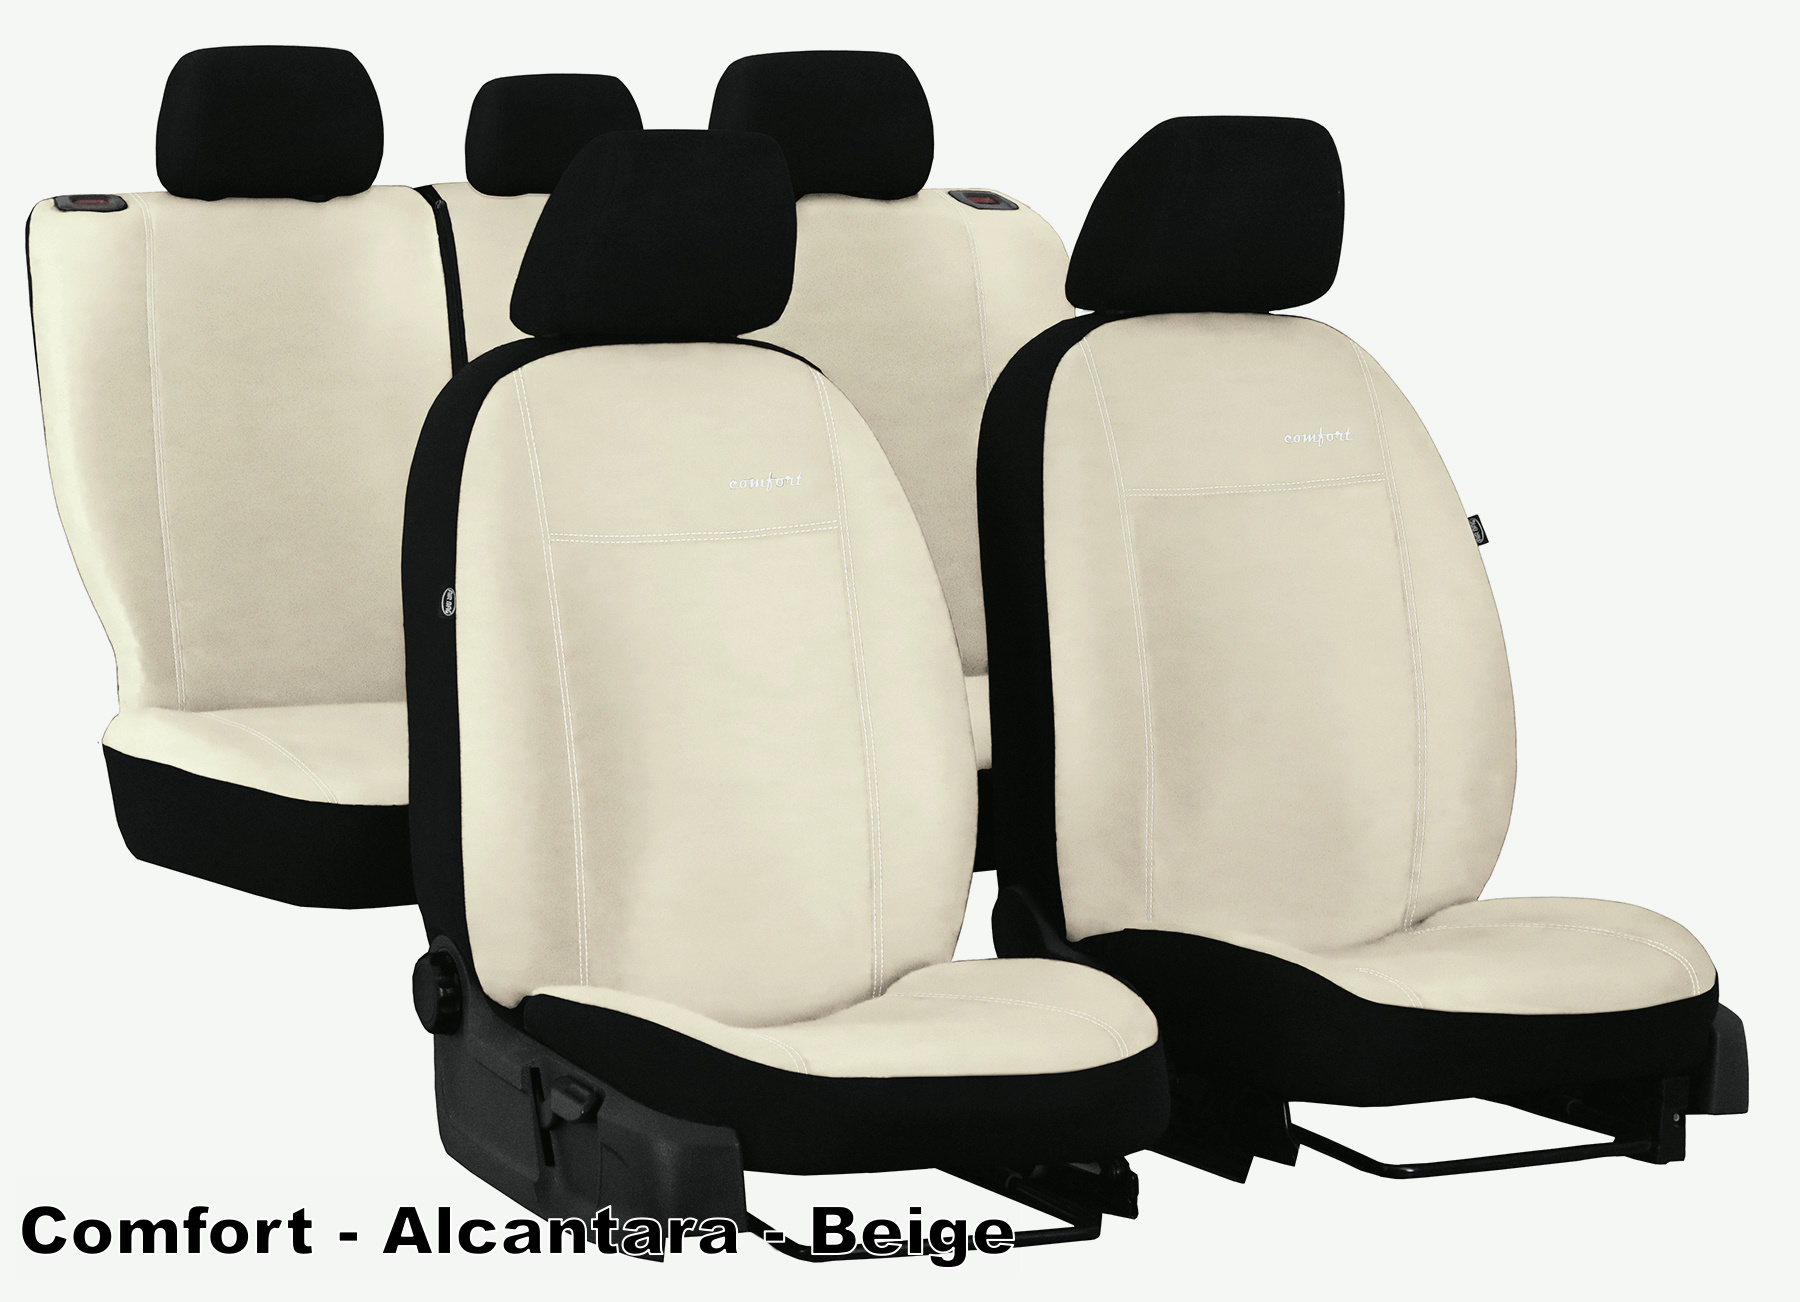 KUMADAI Kühlende Auto Sitzbezüge Kühlung Sitzpolster mit 8 Lüftern